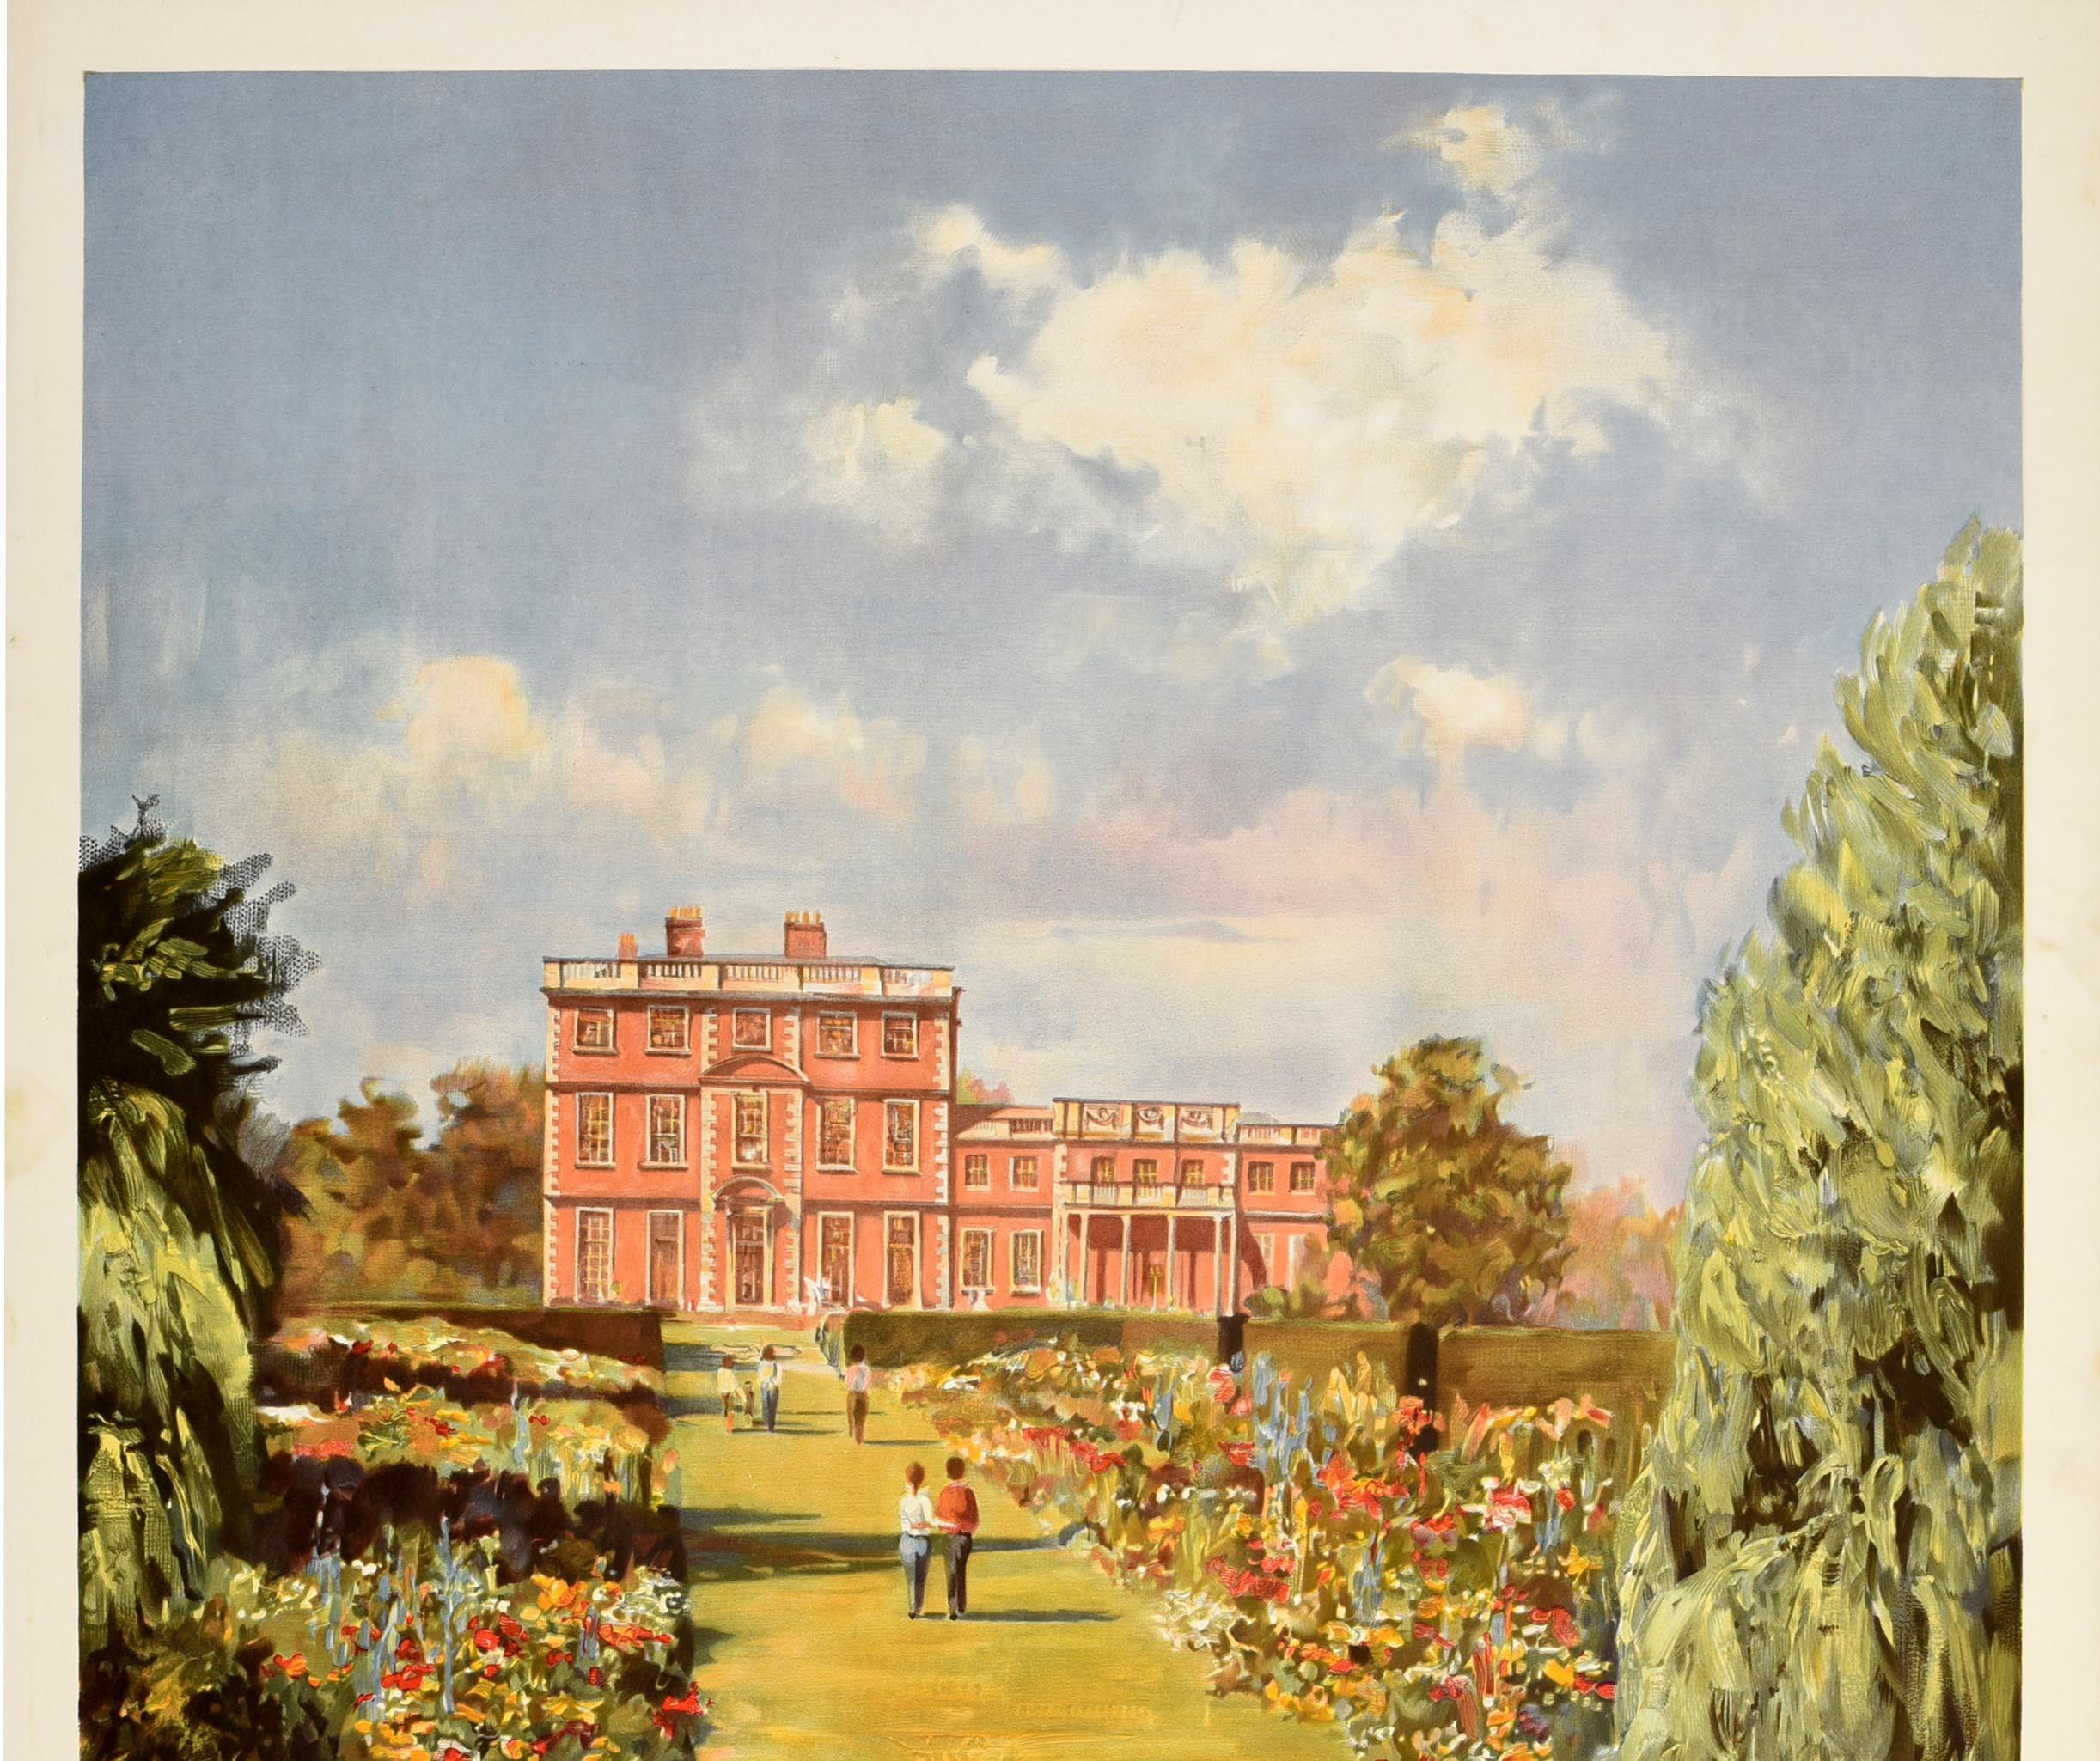 Original-Reiseplakat von British Railways - England's Stately Homes - mit farbenfrohem Kunstwerk von Newby Hall in Yorkshire mit Blick vom Fluss Ure auf Menschen, die durch den gepflegten Garten zwischen Blumenbeeten zum Herrenhaus spazieren, mit